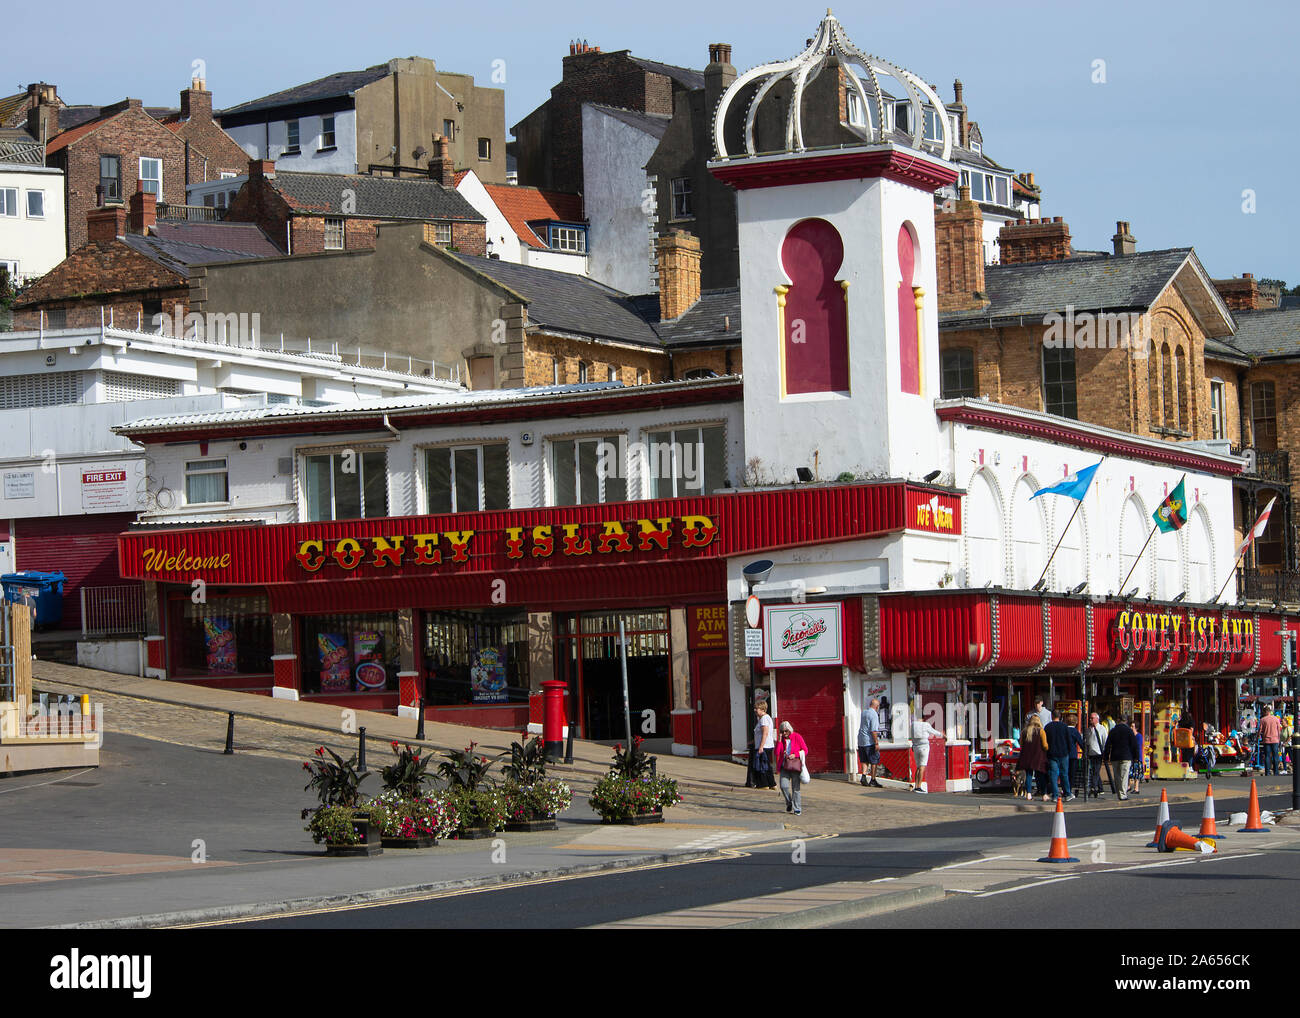 Il Coney isalnd Amusement Building e Arcade con slot machine e giochi a Scarborough North Yorkshire Inghilterra Regno Unito Foto Stock